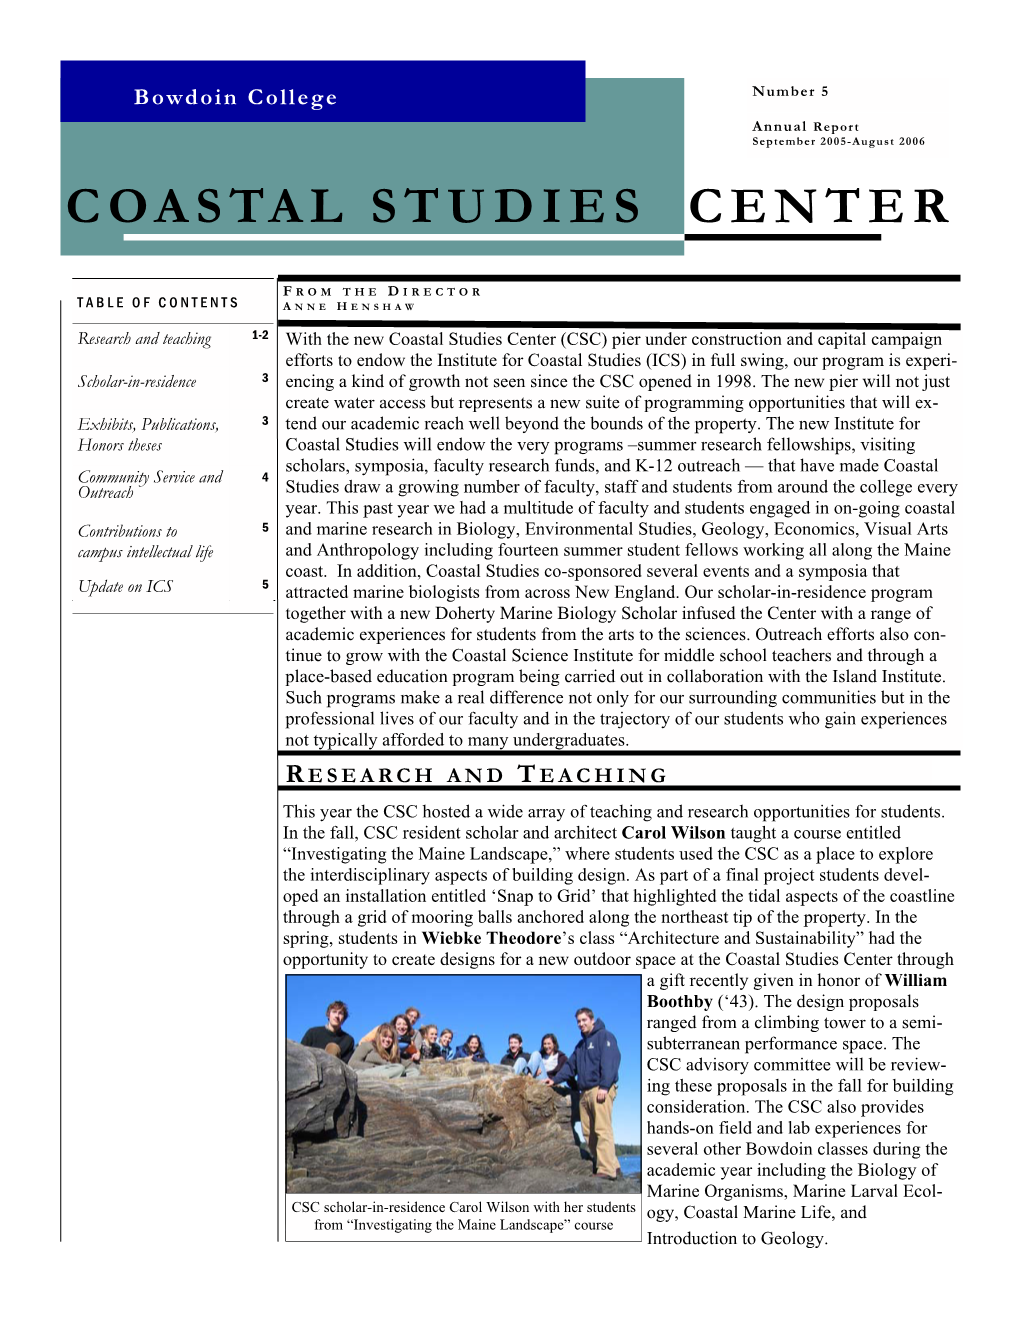 Coastal Studies Annual Report 2005-2006.Pub